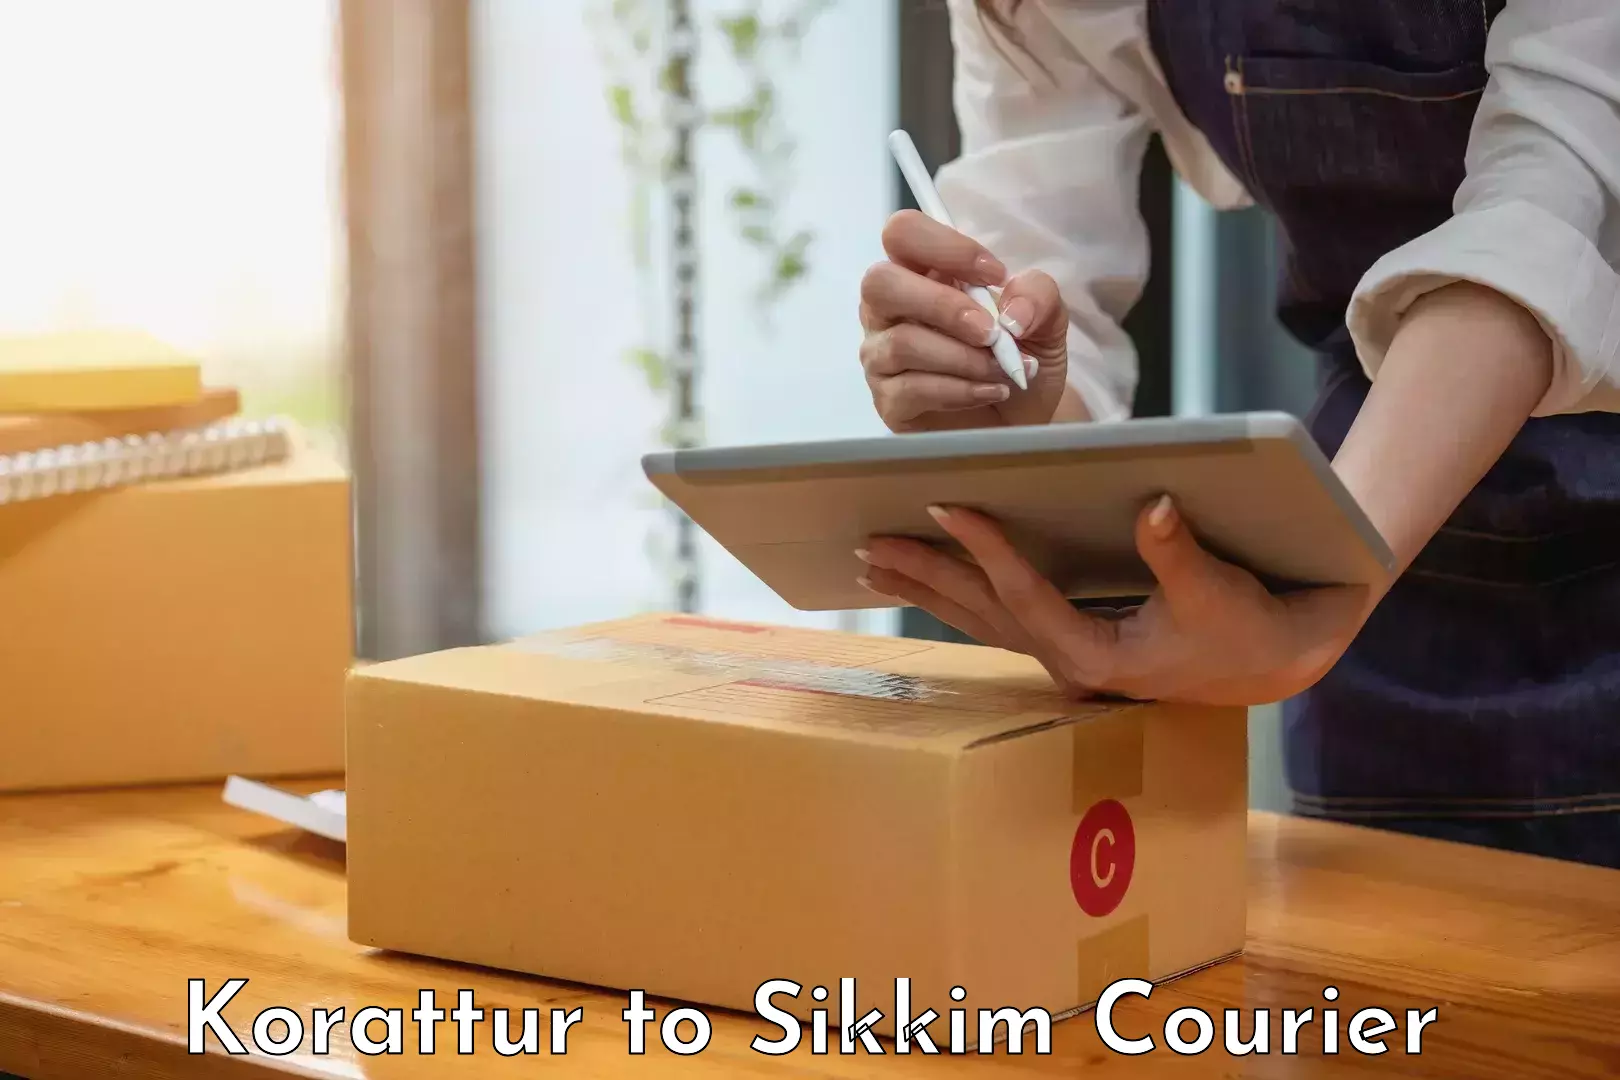 Return courier service Korattur to Sikkim